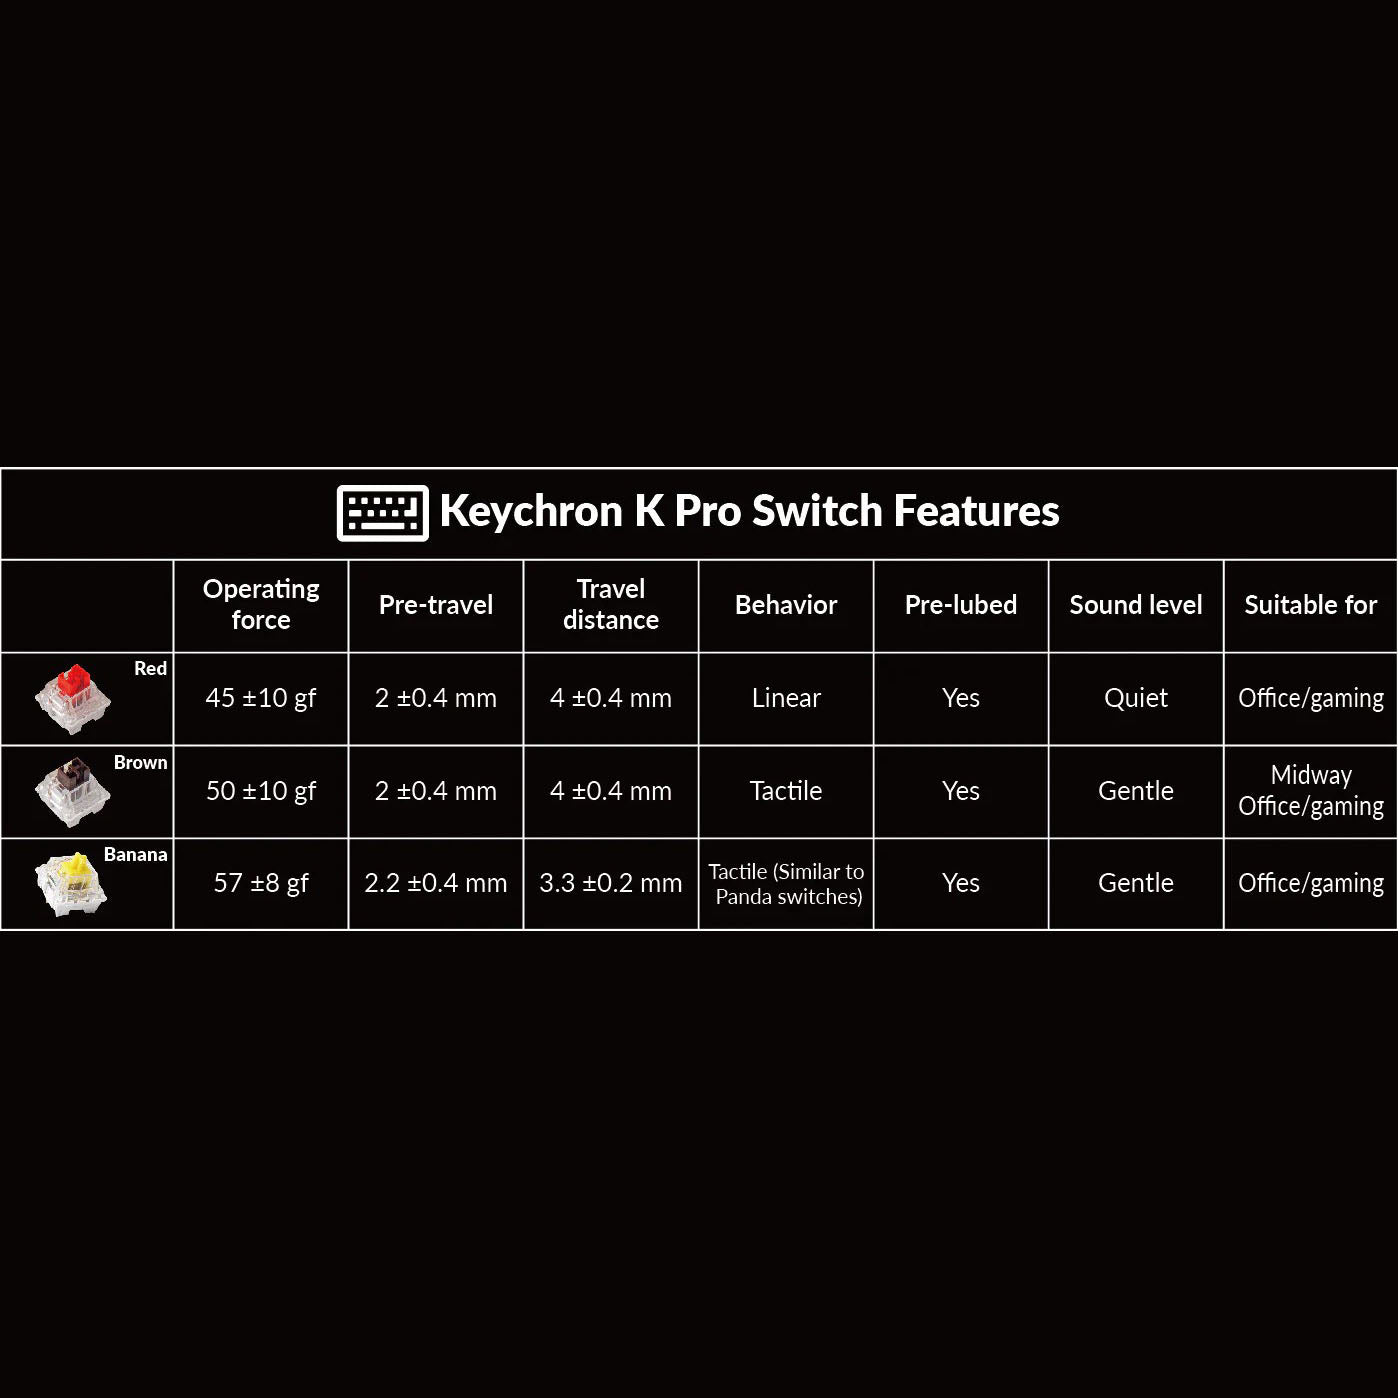 Keychron Q1 Pro QMK Mechanical Keyboard Pre-built